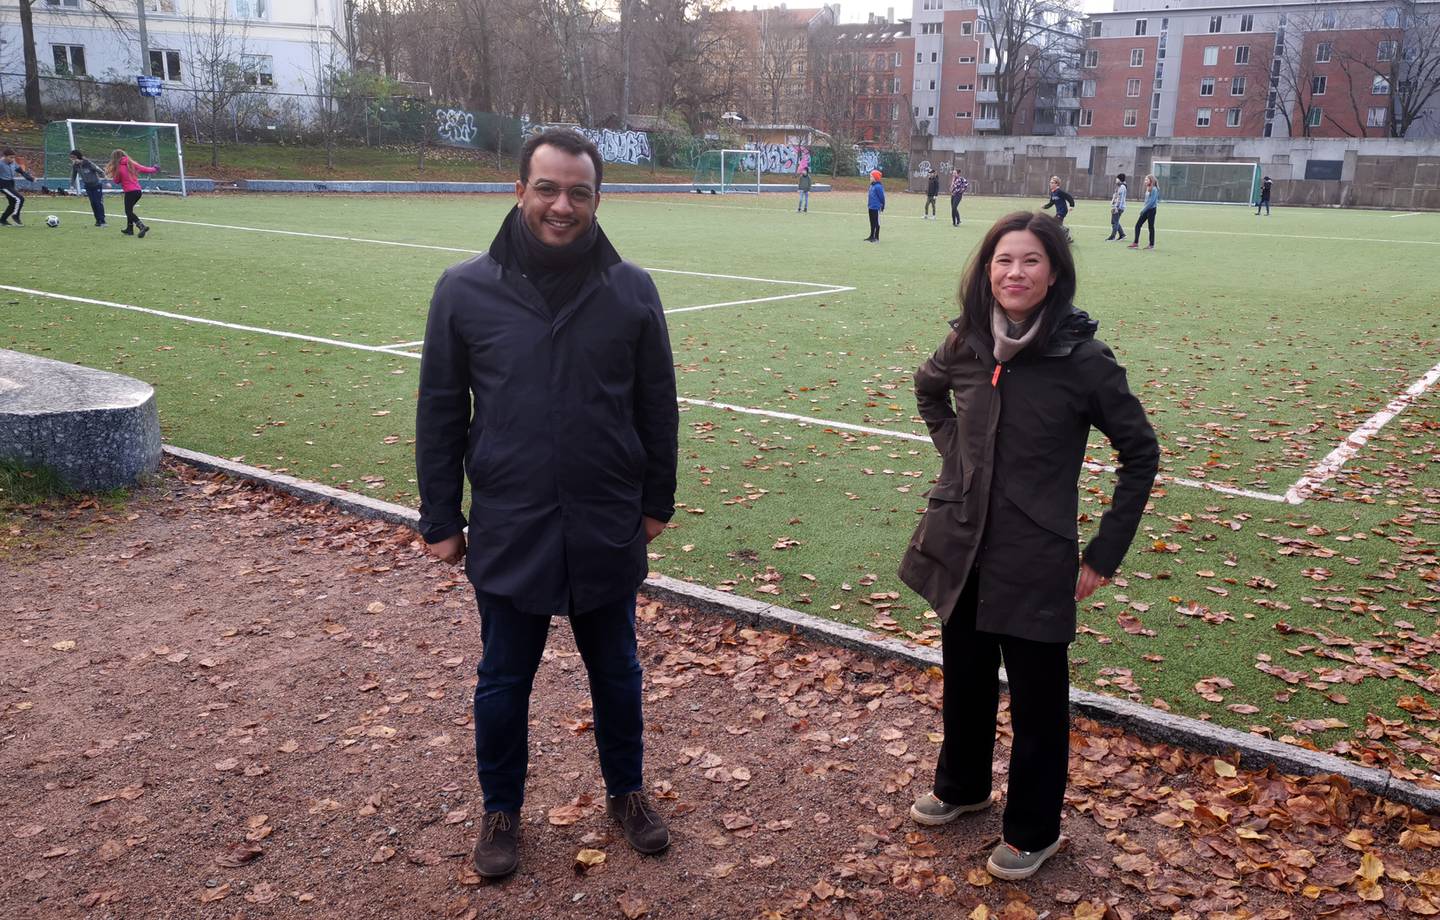 Omar Samy Gamal og Lan Marie Berg foran kunstgressbane på Klosterenga.